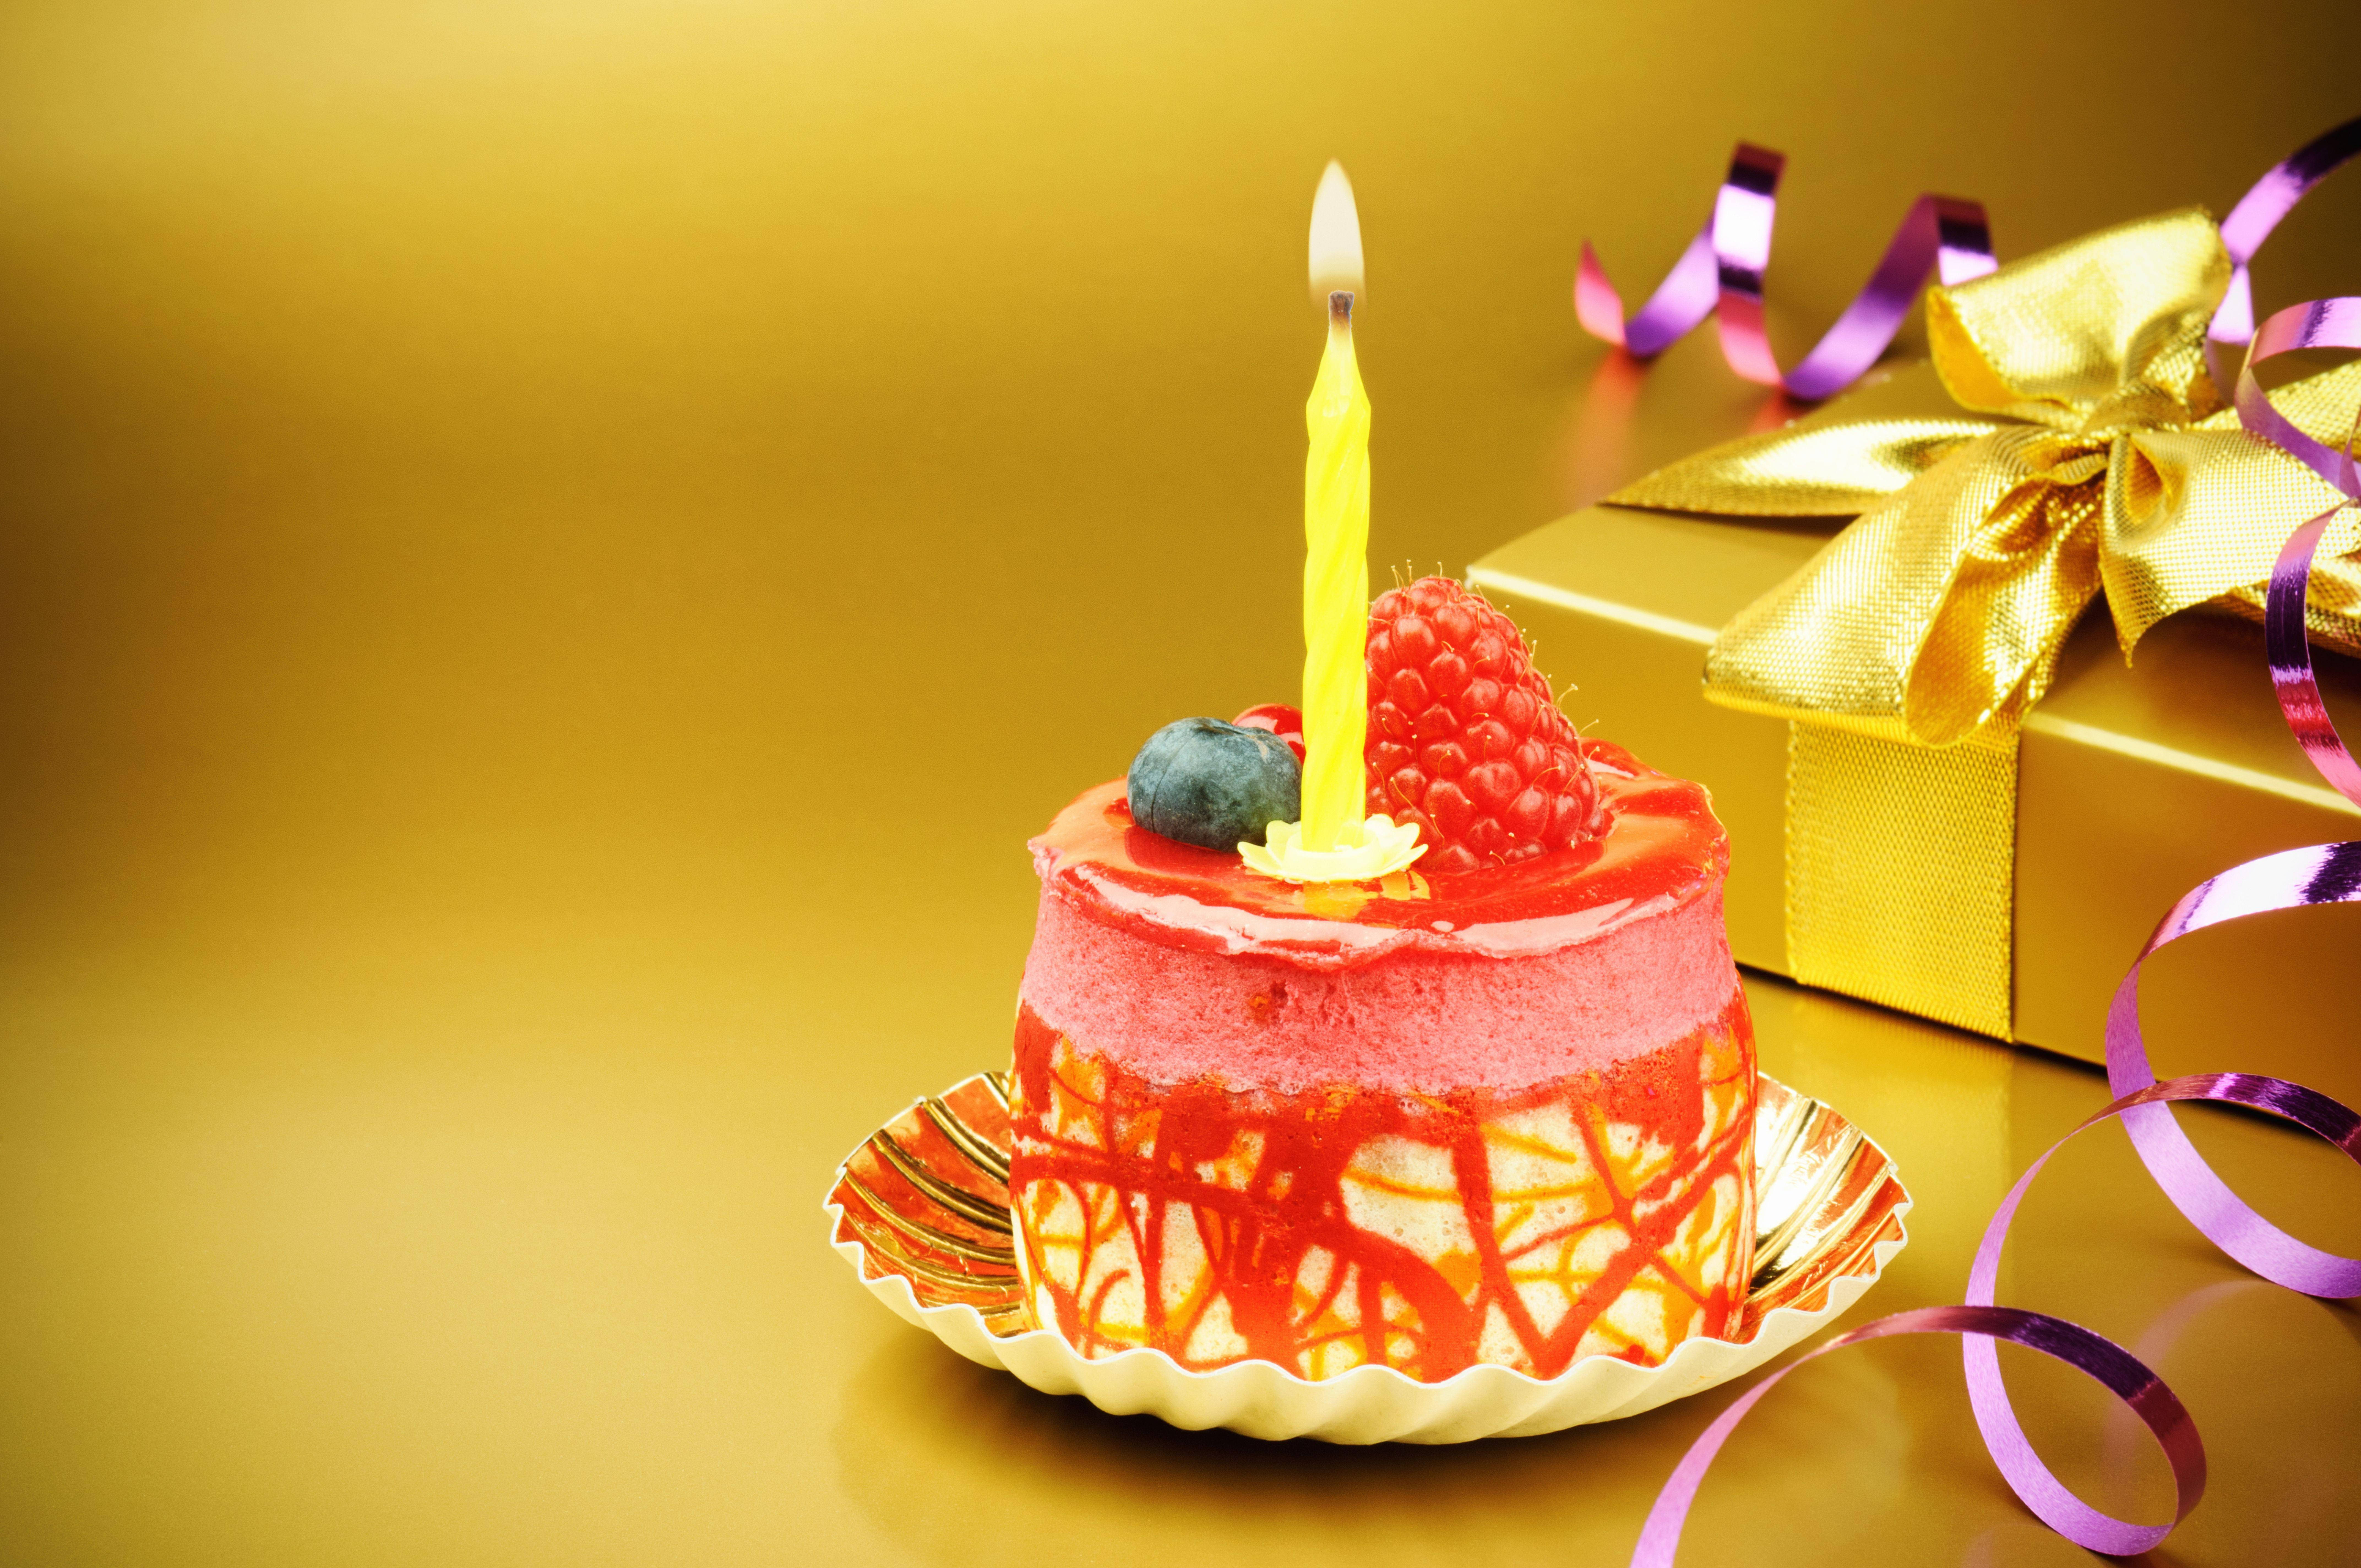 Картинка с днем рождения. С днем рождения. Открытка торт. Картинки с днём рождения. Поздравляю с днём рождения тортик.